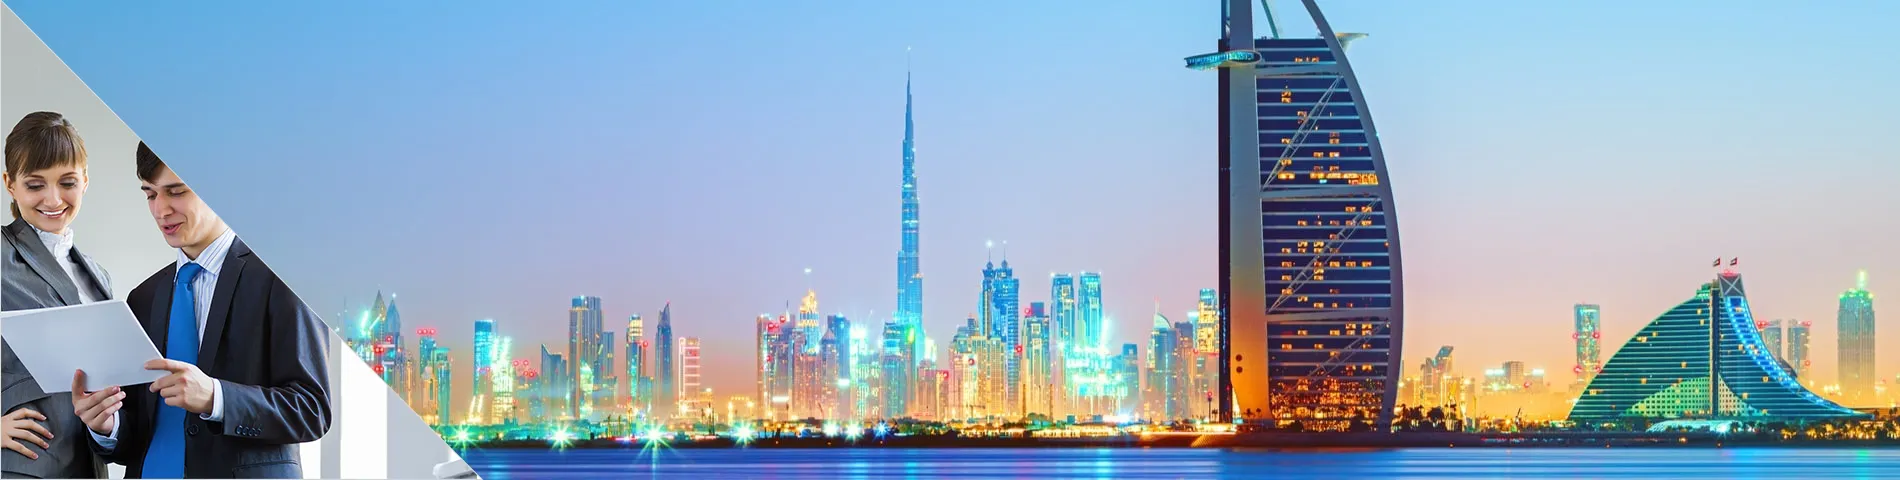 Dubai - Business Individuale